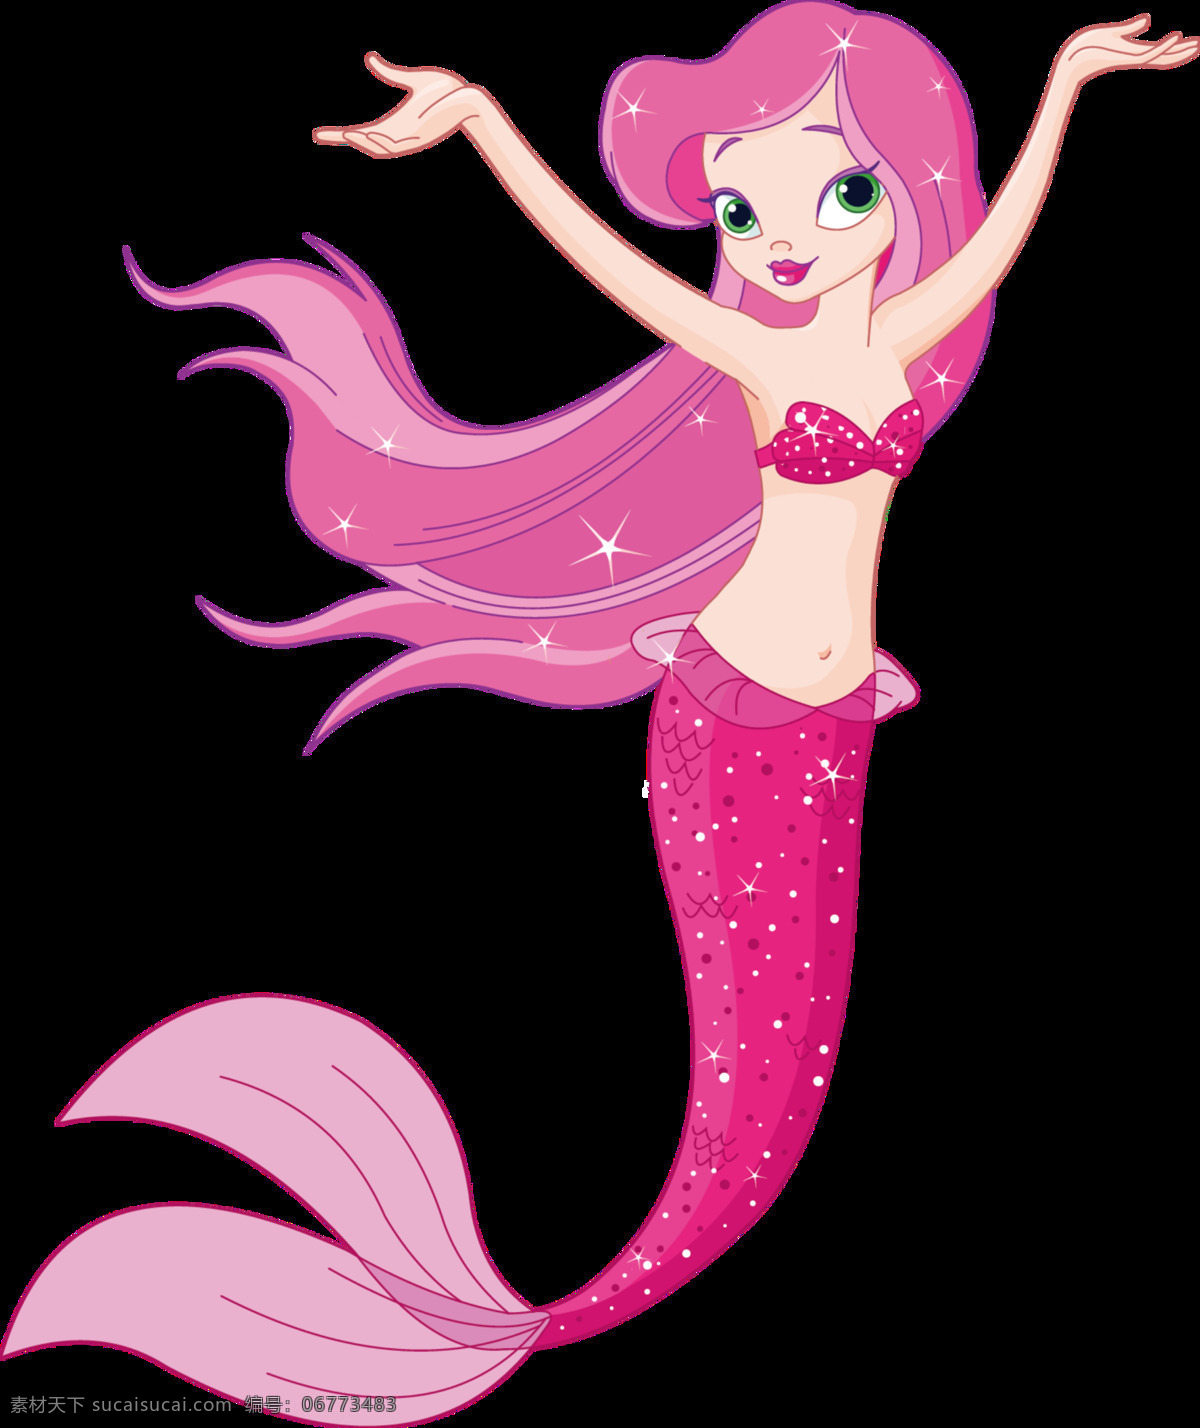 粉色 童话 美人鱼 图案 元素 彩色装饰 美人鱼图案 童话美人鱼